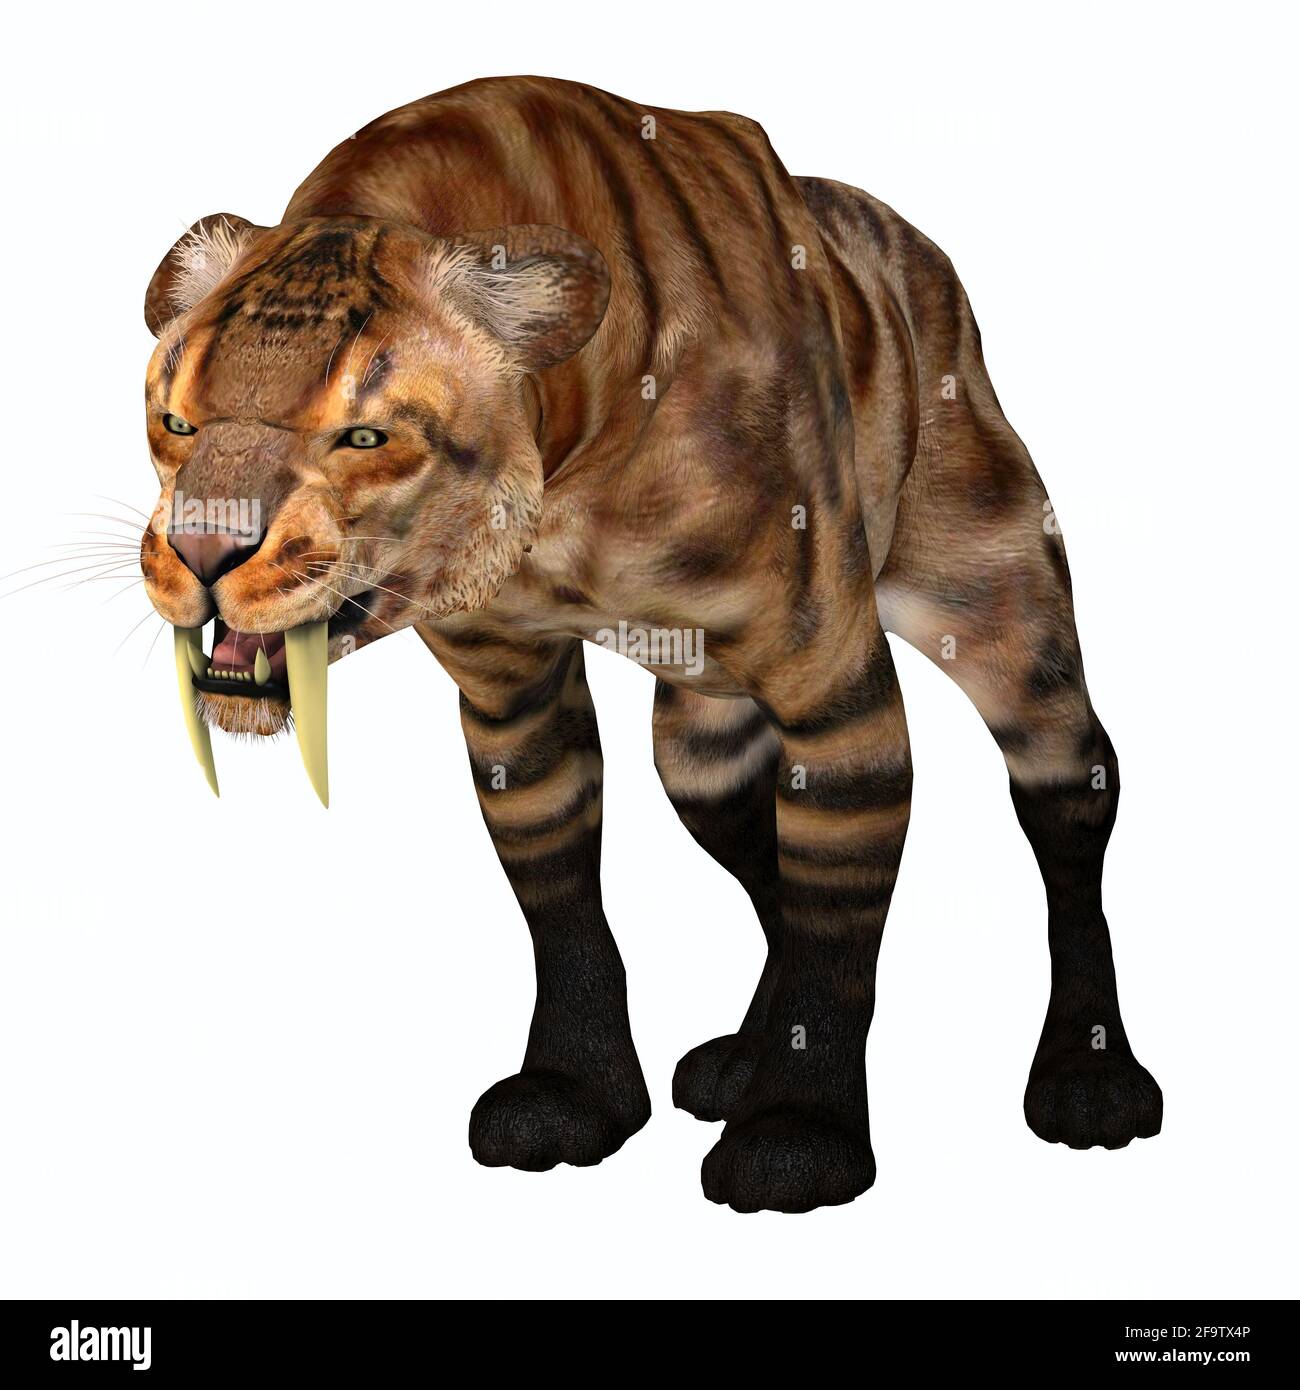 Der Säbelzahn-Tiger war eine Raubkatze, die während der Pleistozän-Zeit in Nordamerika lebte. Stockfoto